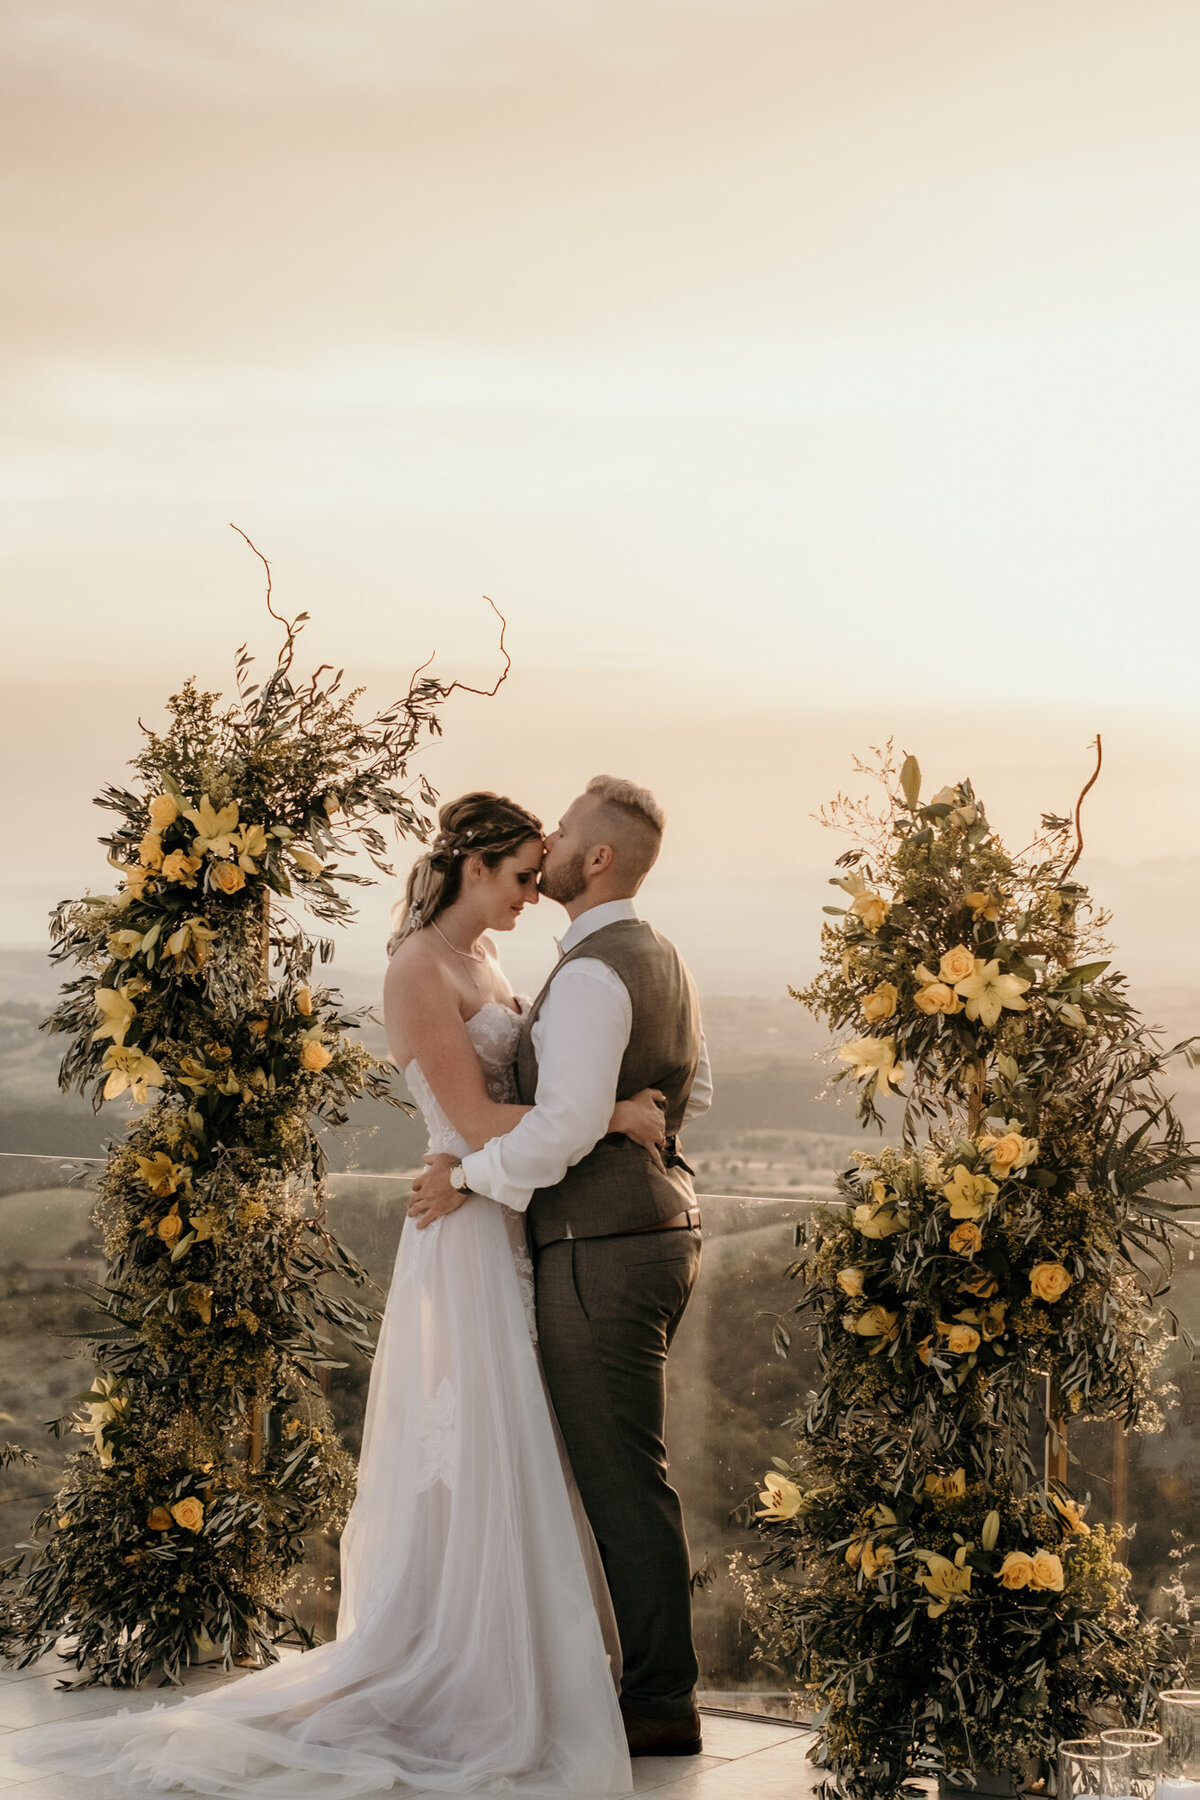 Ein romantischer Stirnkuss vor dem Sonnenuntergang zwischen den gelben Rosenstöcken wird in Ganzkörperaufnahme gezeigt.